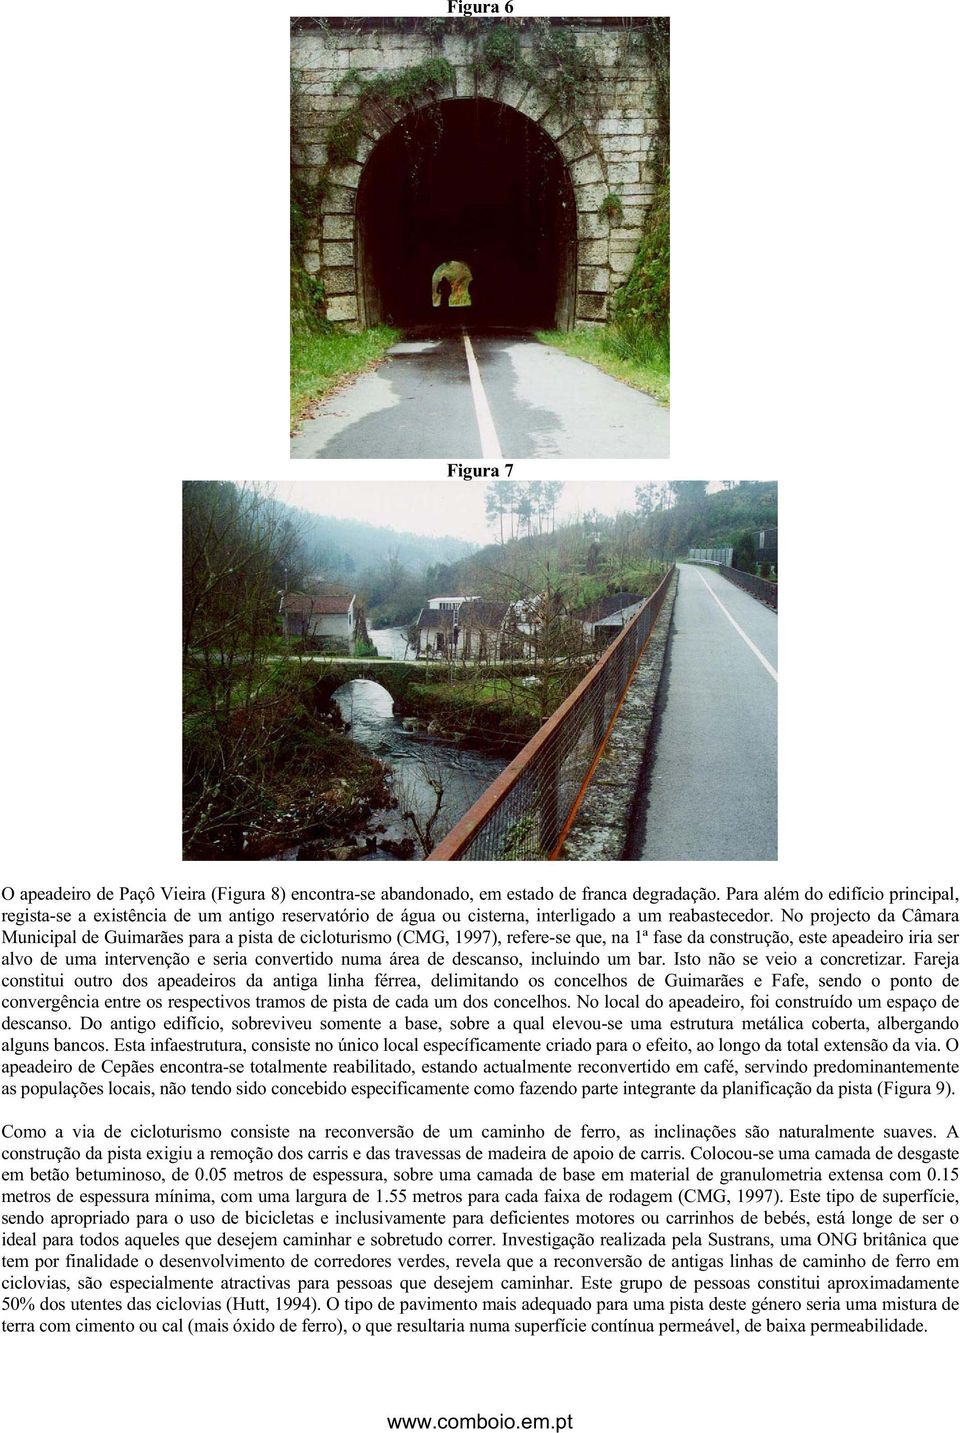 No projecto da Câmara Municipal de Guimarães para a pista de cicloturismo (CMG, 1997), refere-se que, na 1ª fase da construção, este apeadeiro iria ser alvo de uma intervenção e seria convertido numa